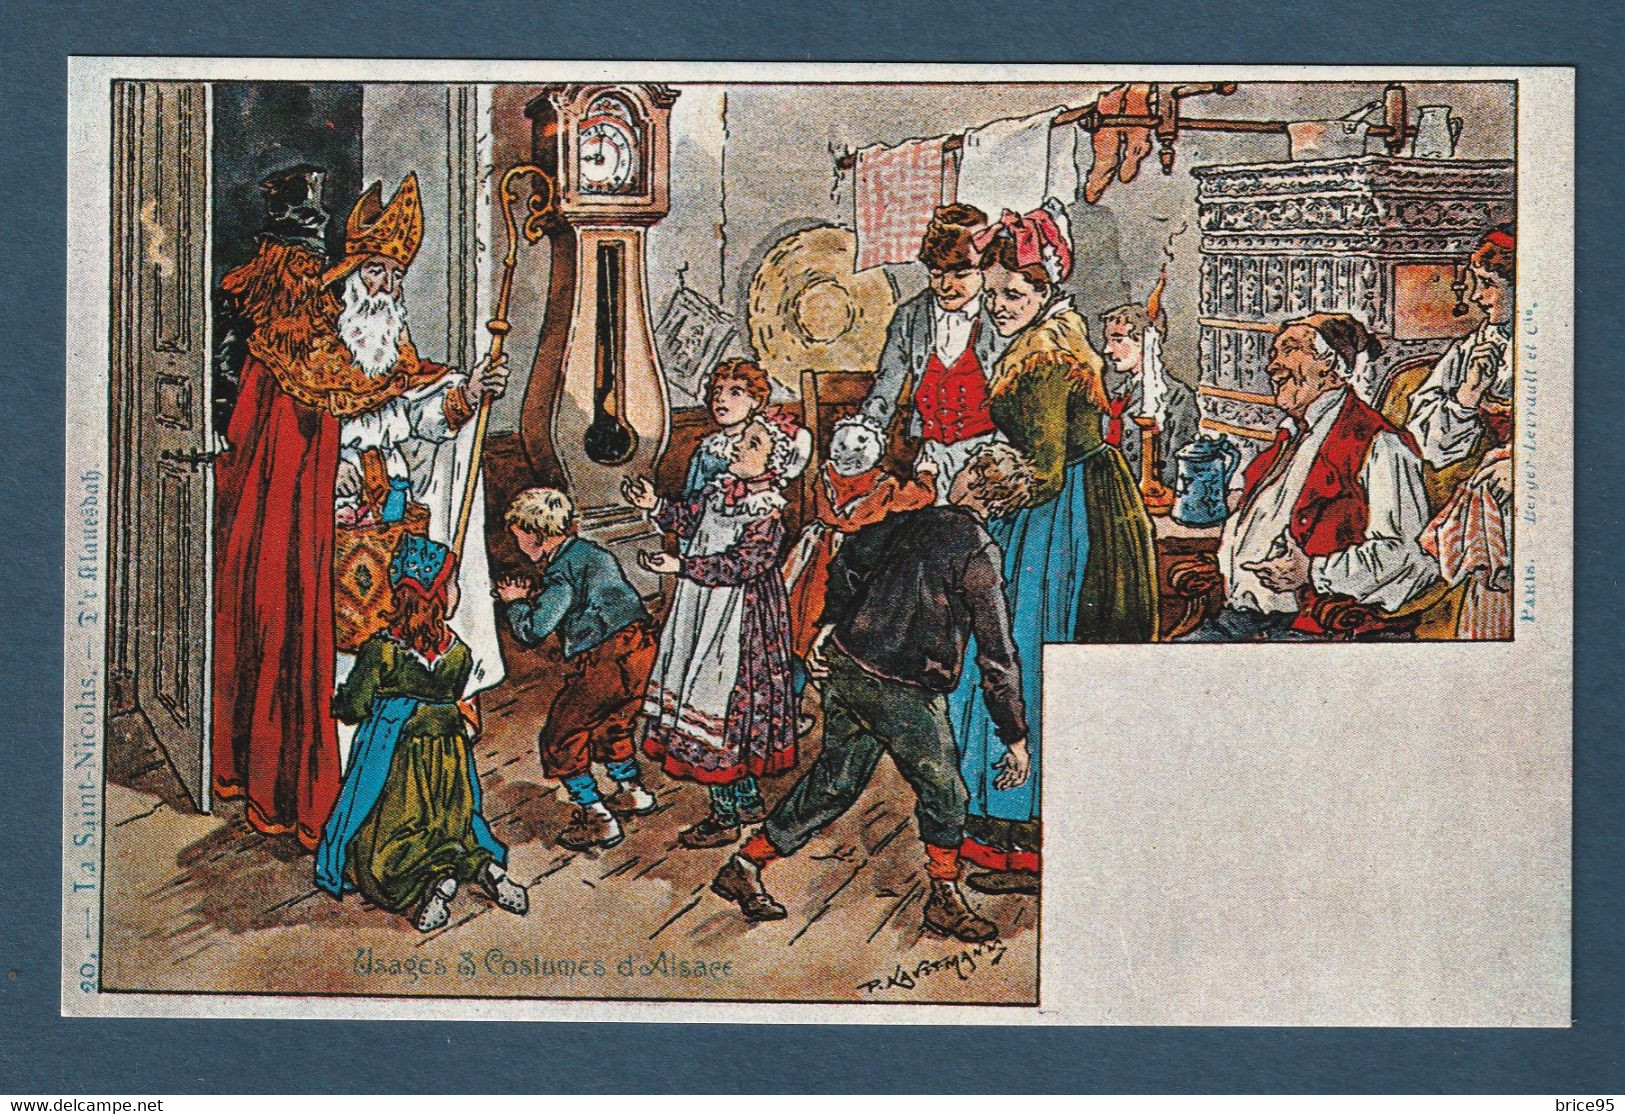 ⭐ France - Carte Postale - Paul Kauffmann - La Saint Nicolas - Usages Et Costumes D'Alsace ⭐ - Kauffmann, Paul